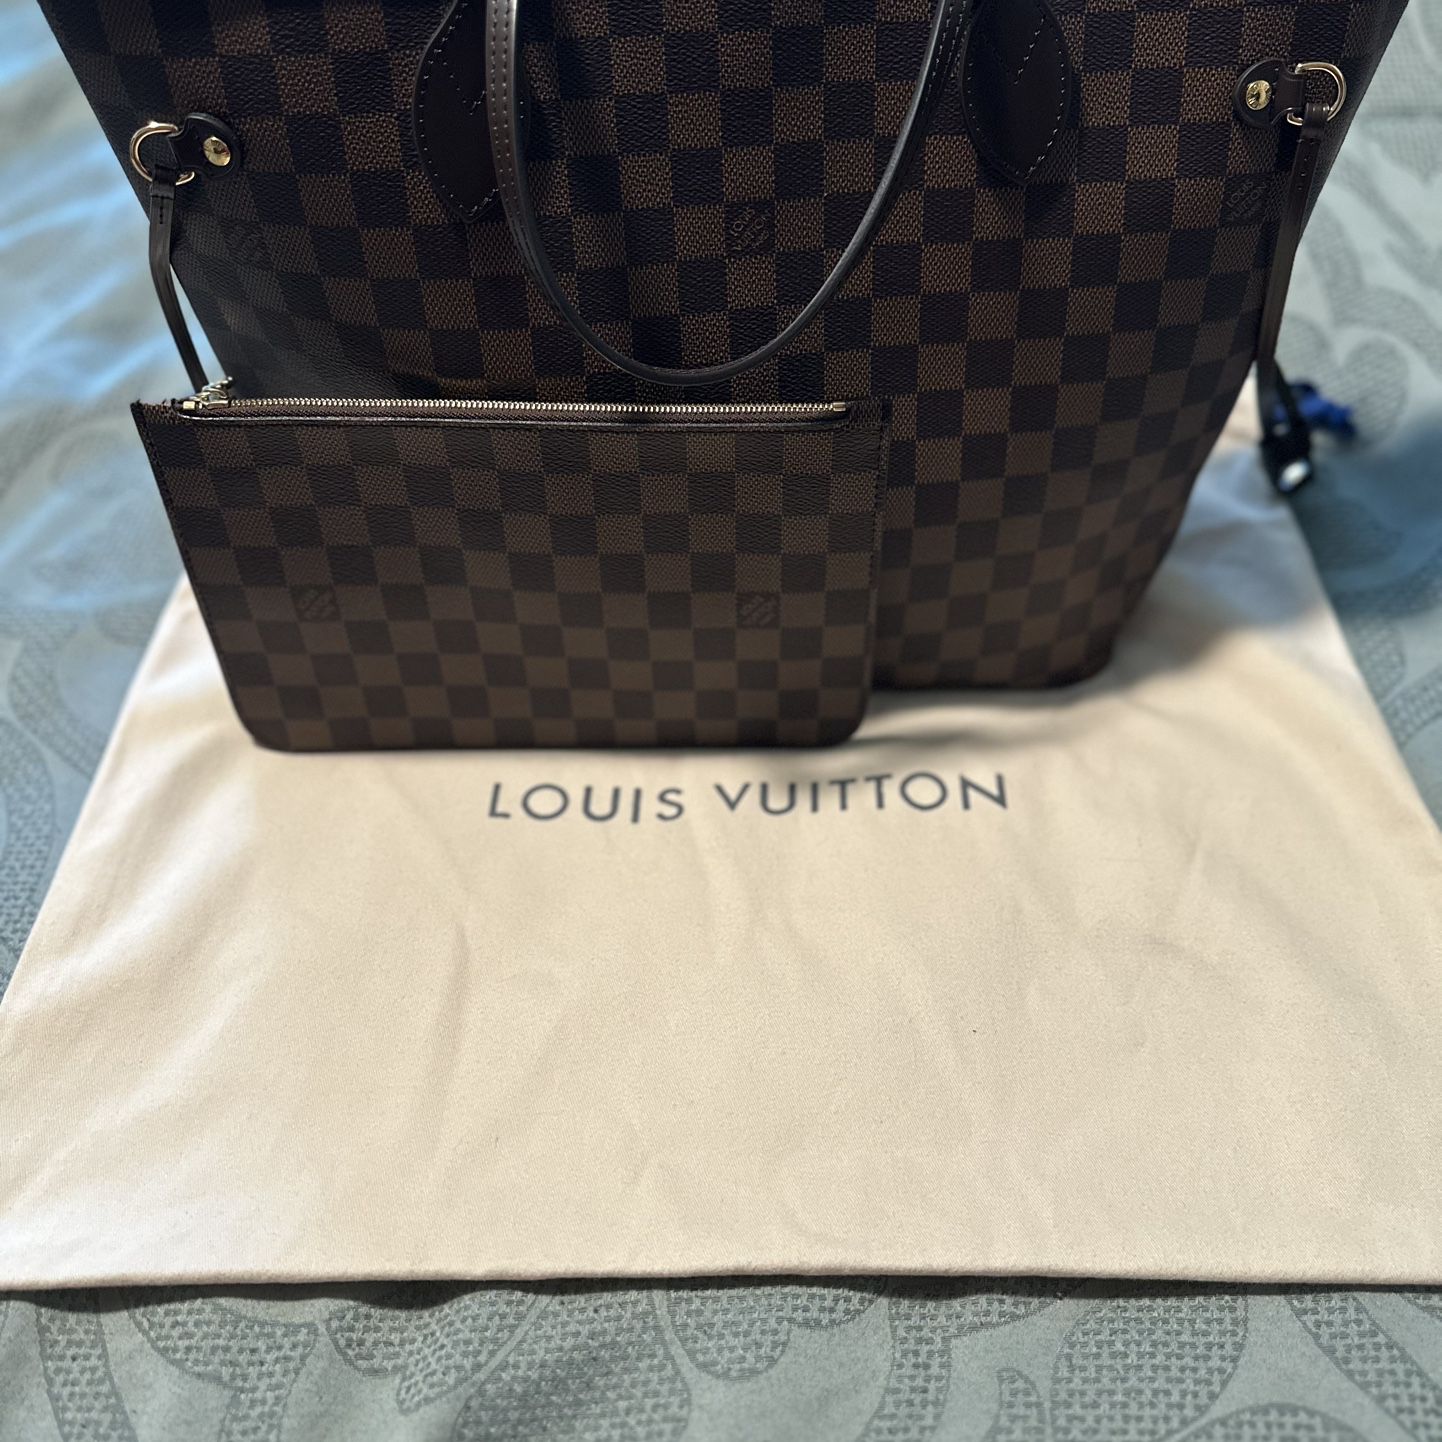 Louis Vuitton Neverfull Bag 